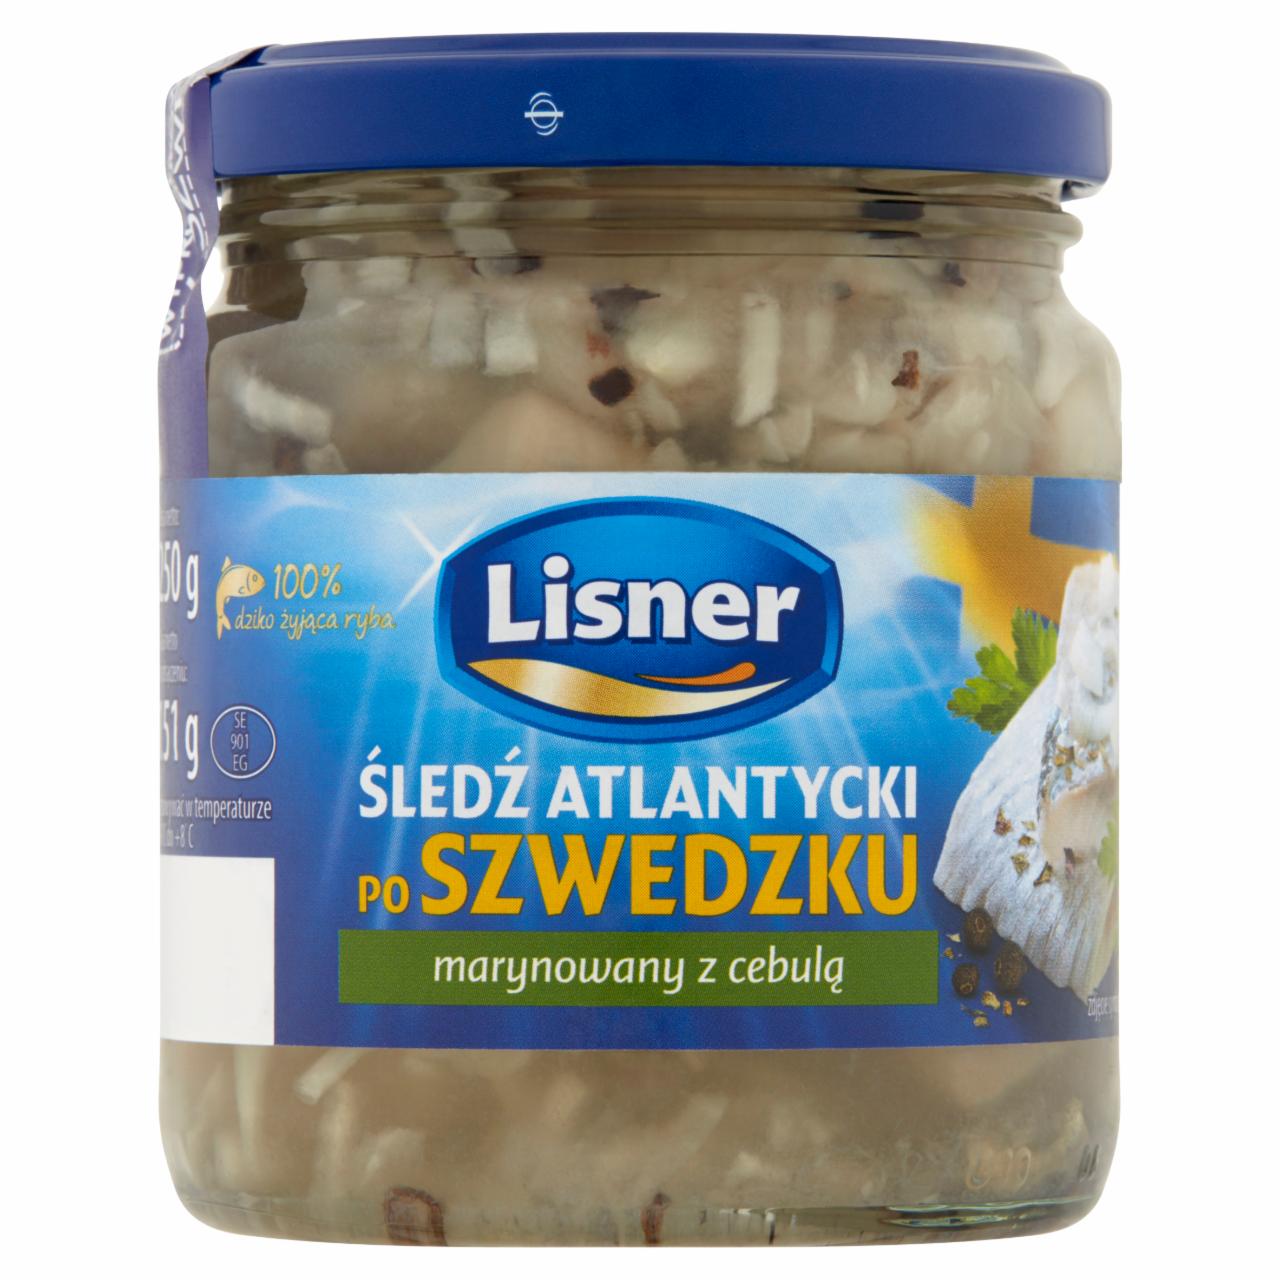 Zdjęcia - Lisner Śledź atlantycki po szwedzku marynowany z cebulą 250 g